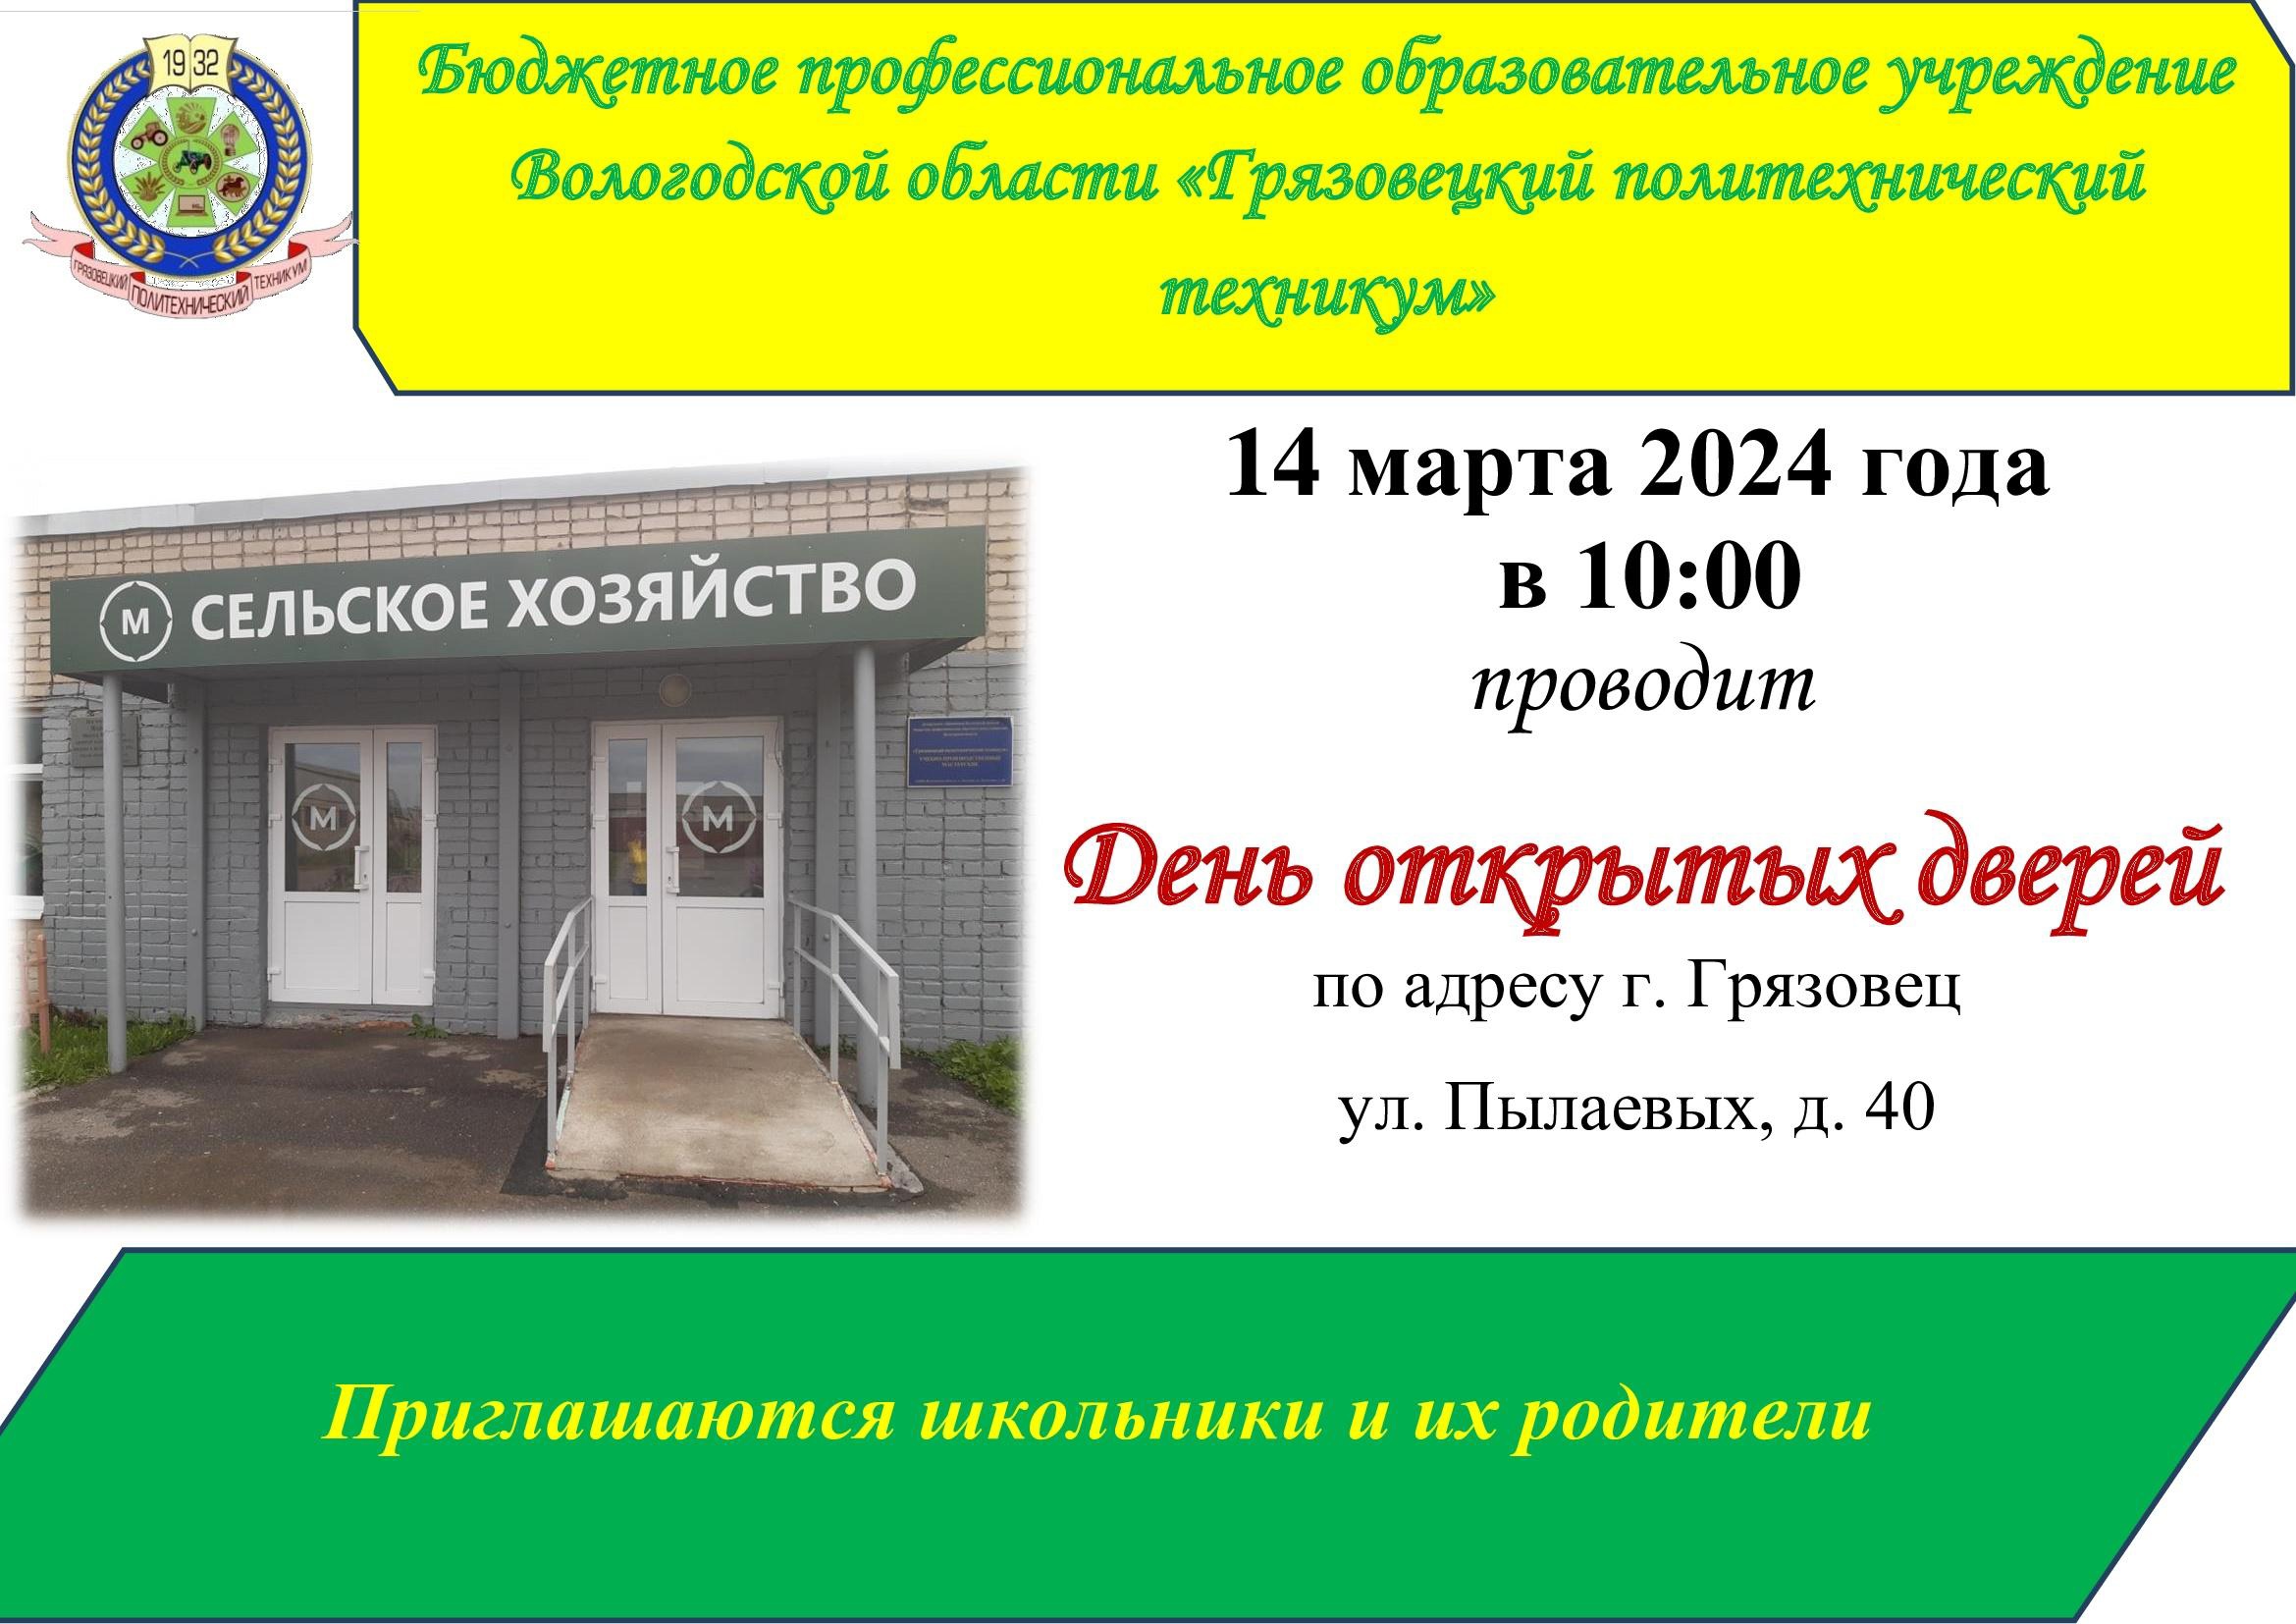 Грязовецкий политехнический техникум приглашает на День открытых дверей.